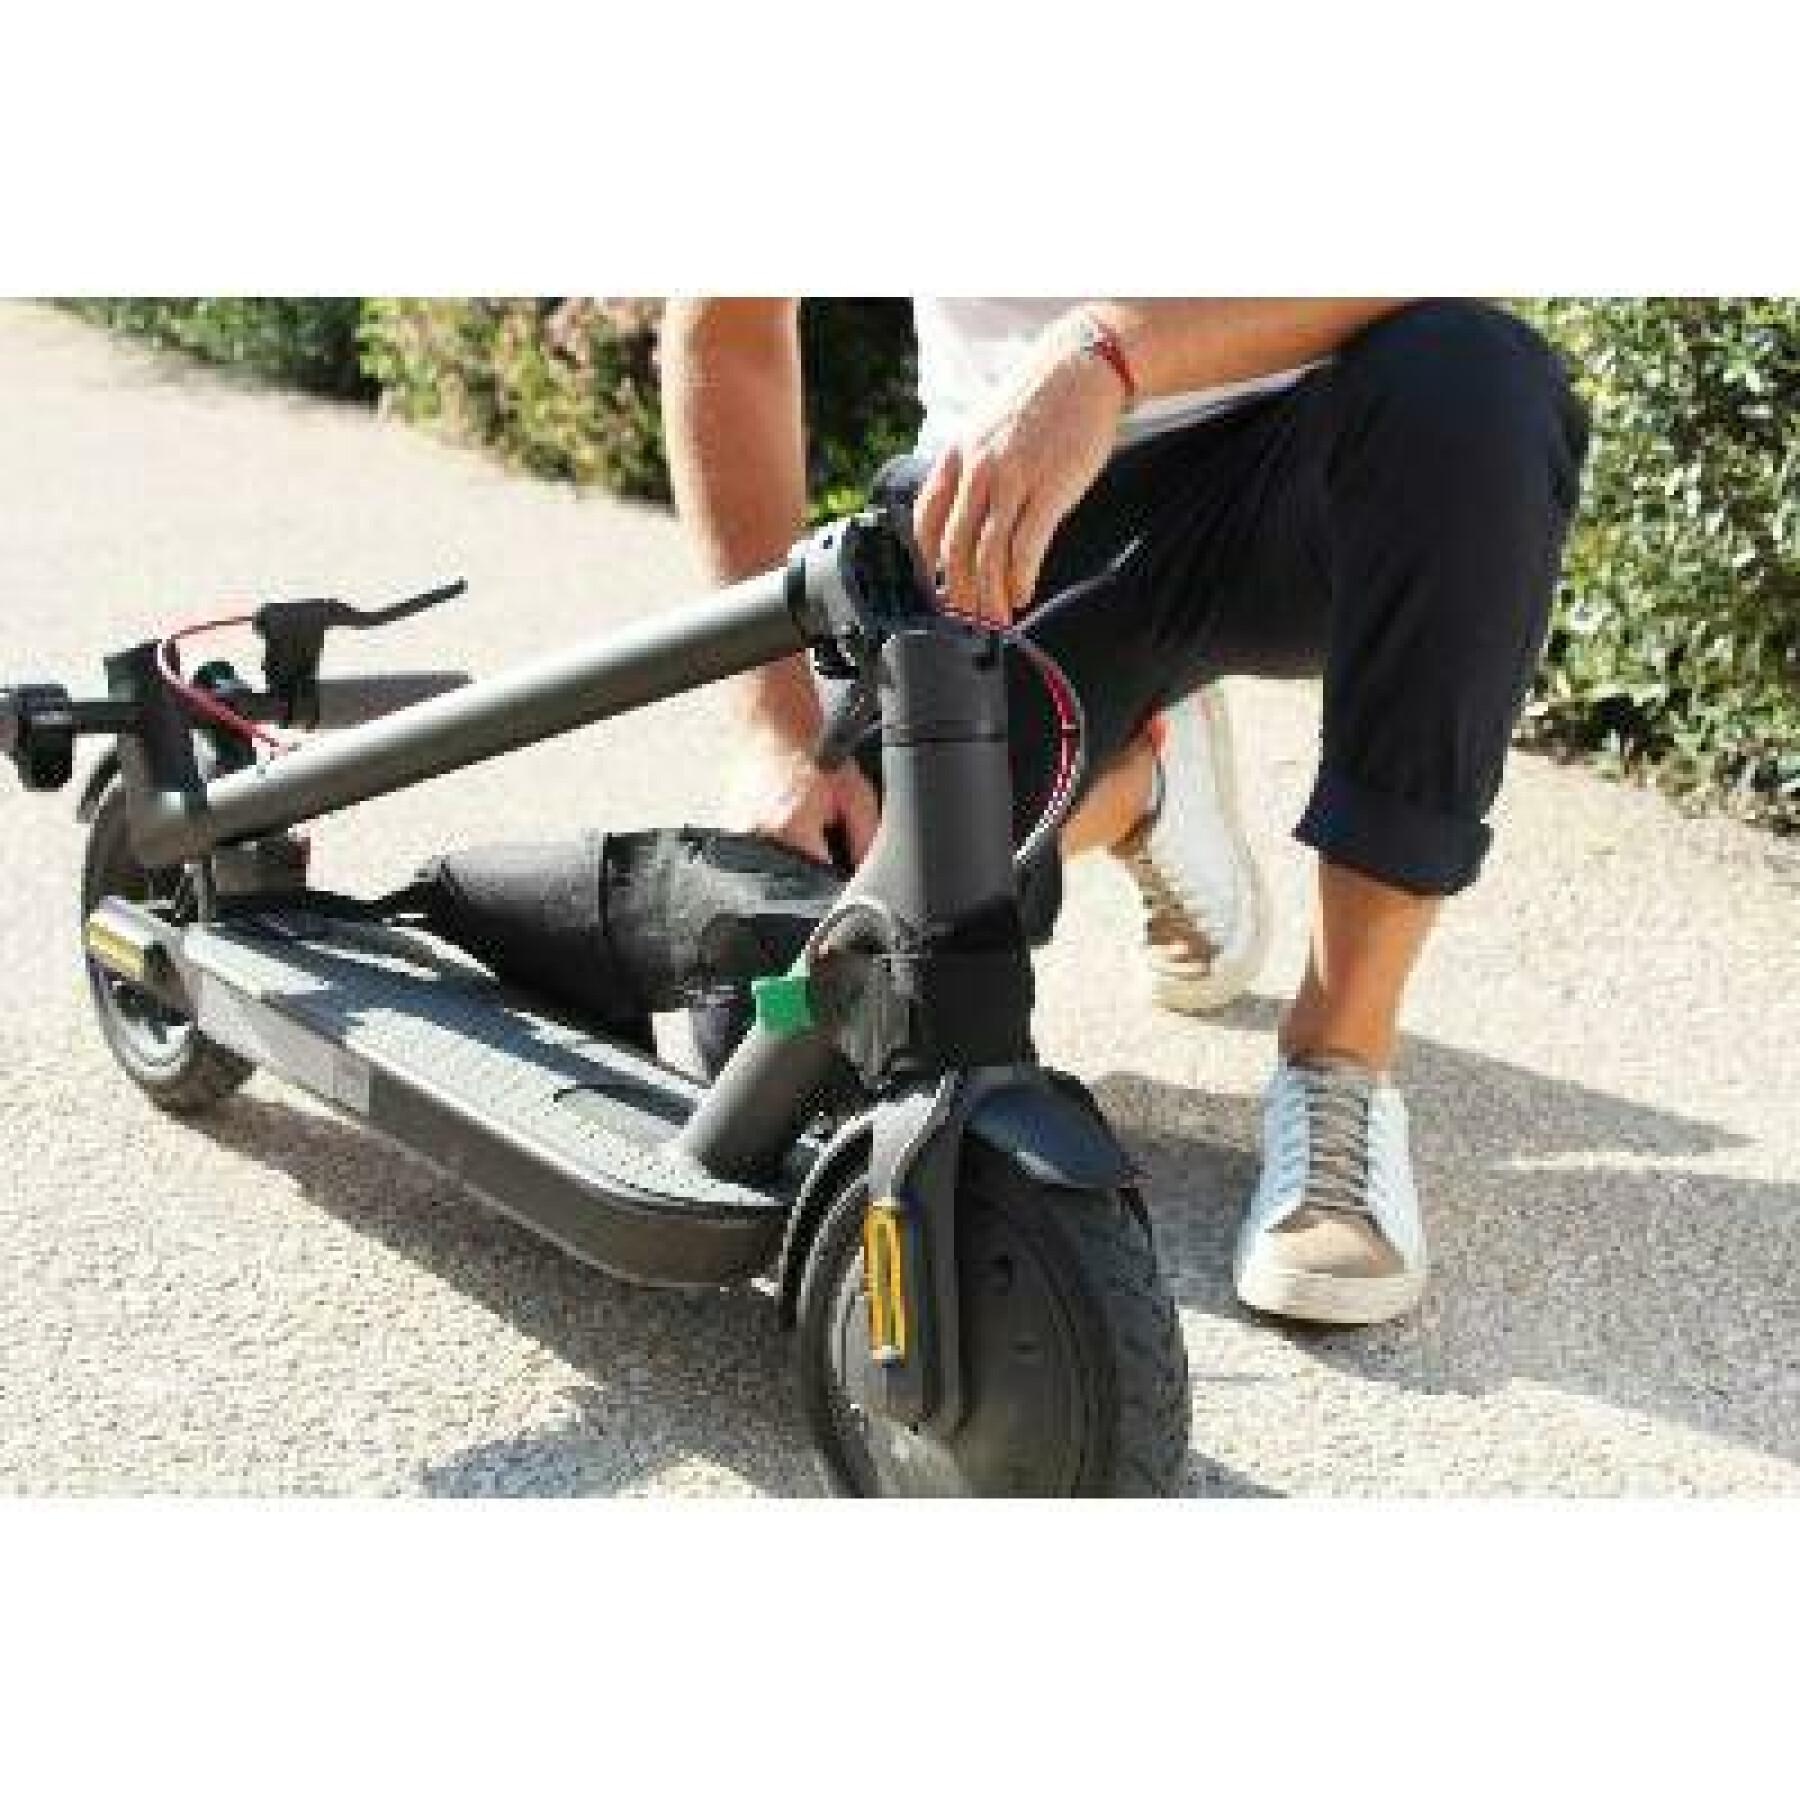 Universellt system för enkel transport av din scooter Wantalis trotback